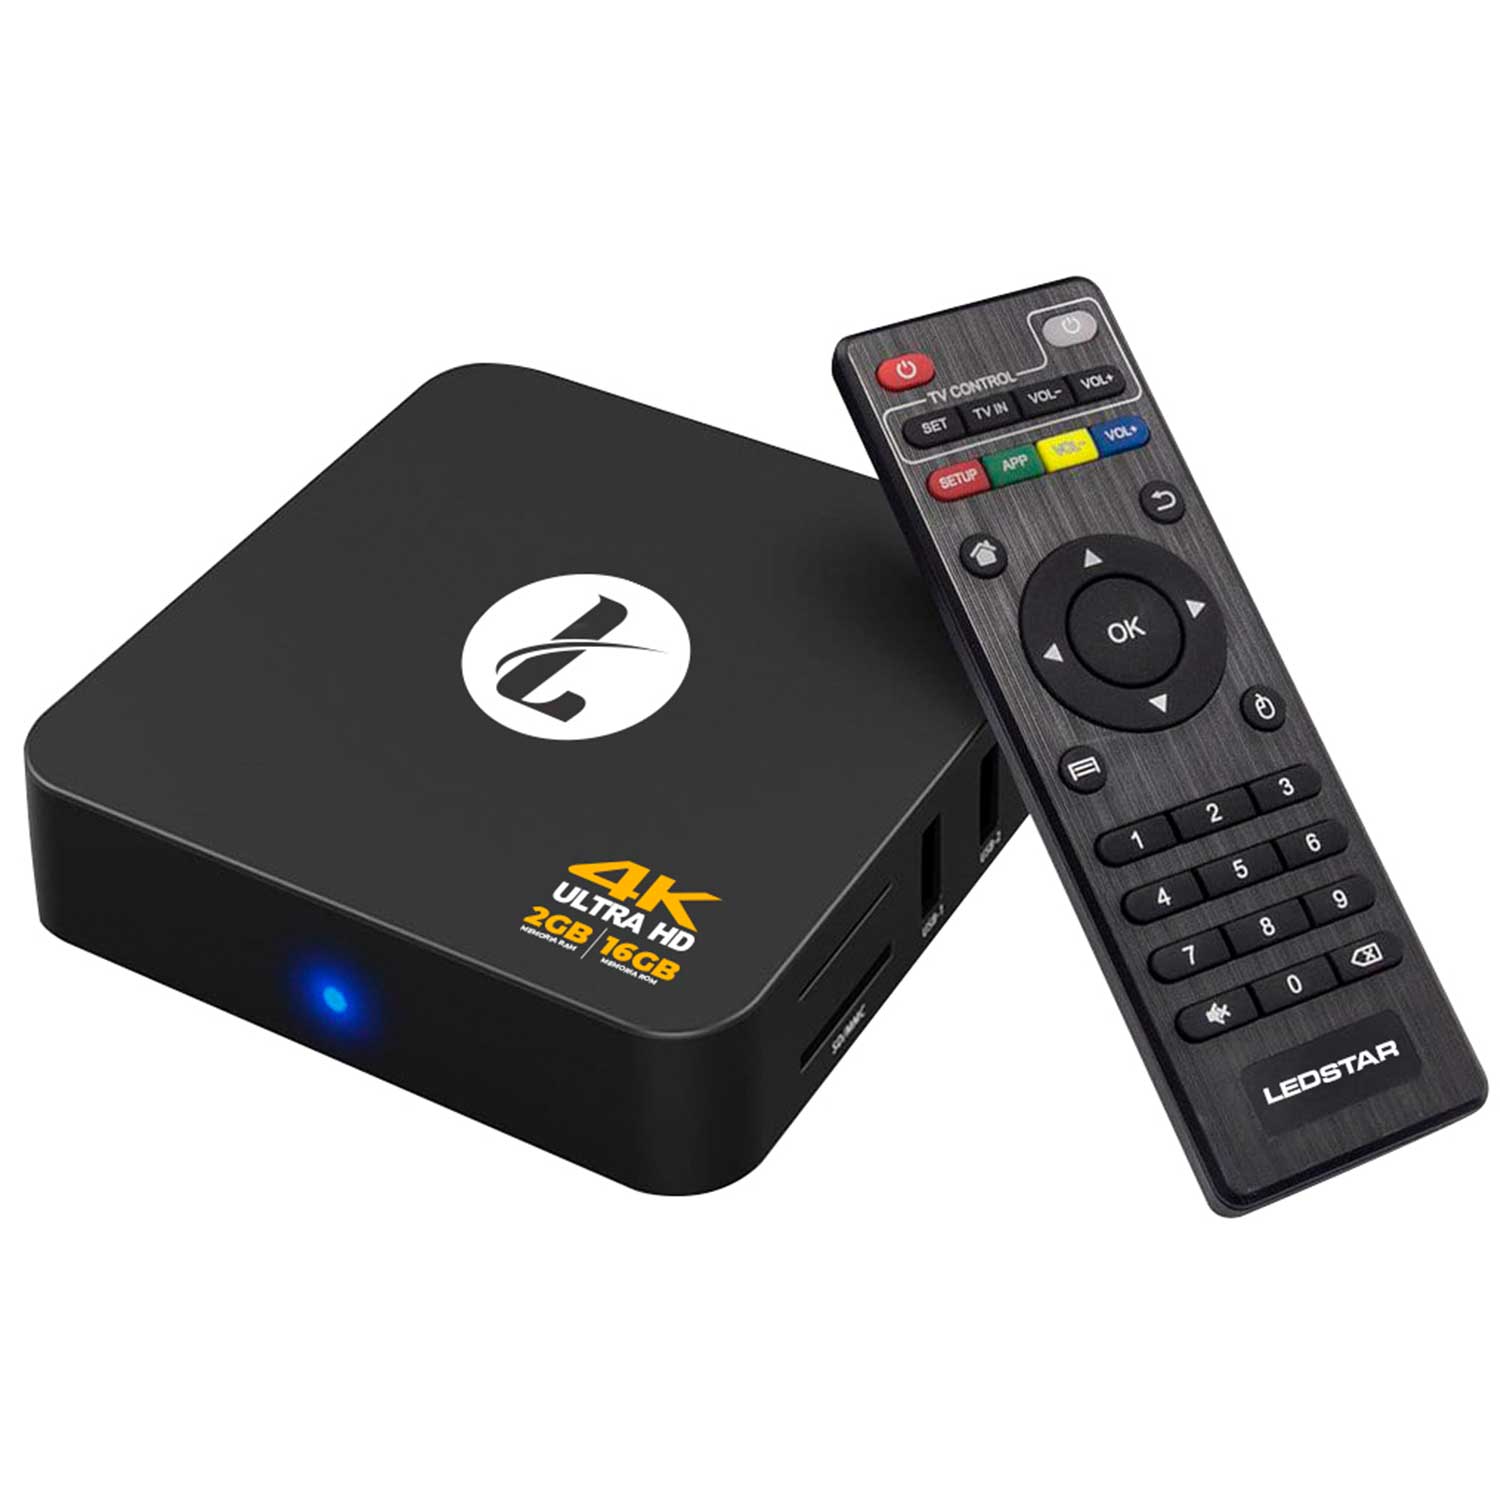 Box 512 - Loja Física - Áudio, TV, vídeo e fotografia - Eldorado, Contagem  1234666902